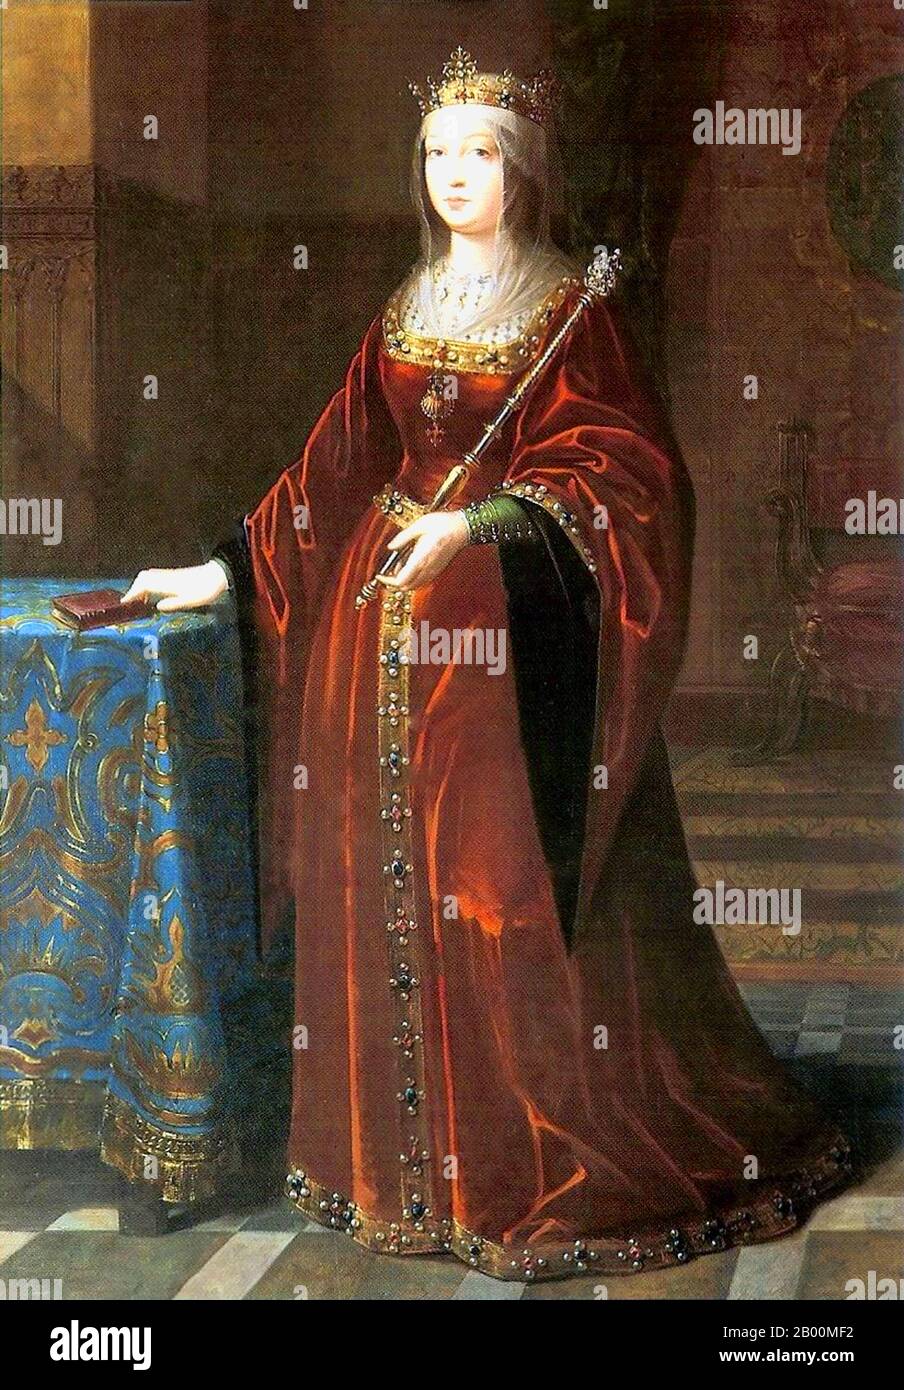 Spanien: "Isabella I. (1451-1504), Königin von Kastilien und Leon". Öl auf Leinwand Gemälde von Luis de Madrazo (1825-1897), c. 1848. Isabella I. (spanisch: Isabel I., Ysabel, als Elisabeth anglikiert) (22. April 1451-26. November 1504) war Königin von Kastilien und Leon. Sie und ihr Ehemann Ferdinand II von Aragon brachten Stabilität in beide Königreiche, die die Grundlage für die Vereinigung Spaniens wurde. Später legten die beiden unter ihrem Enkel Karl V., dem Heiligen Römischen Kaiser, den Grundstein für die politische Vereinigung Spaniens. Stockfoto